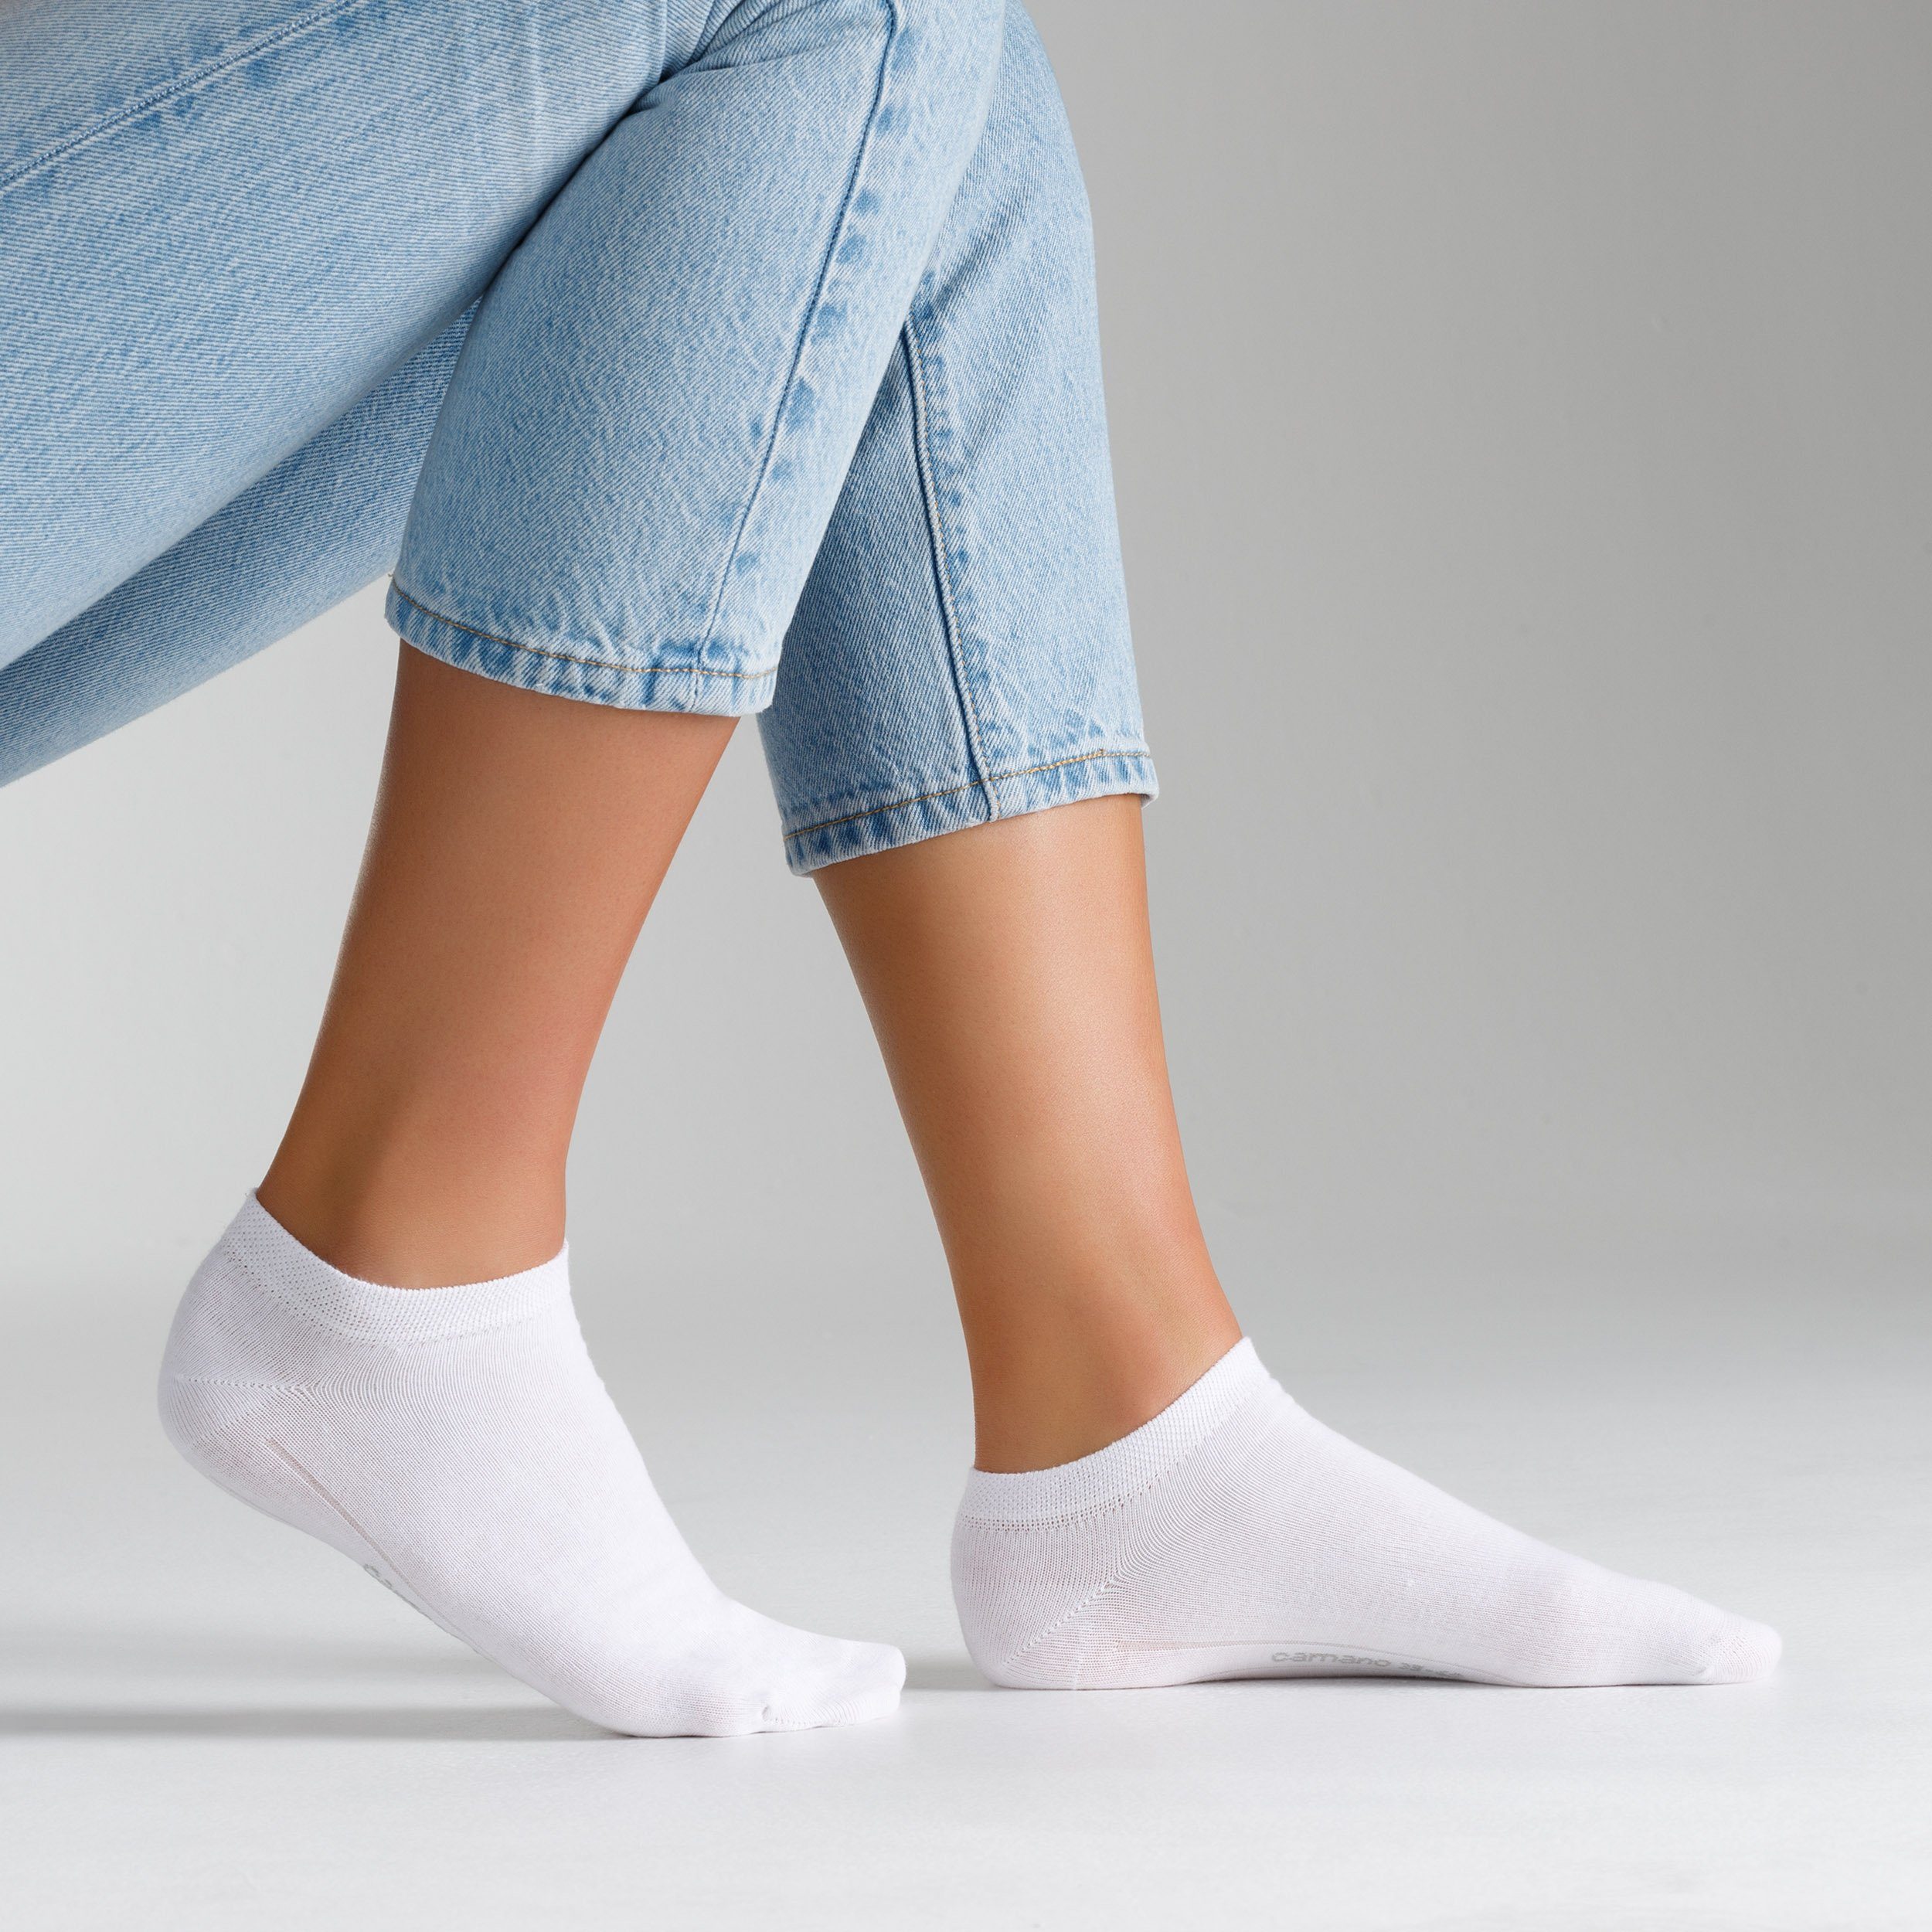 Camano Socken (9-Paar) in schlichtem Design